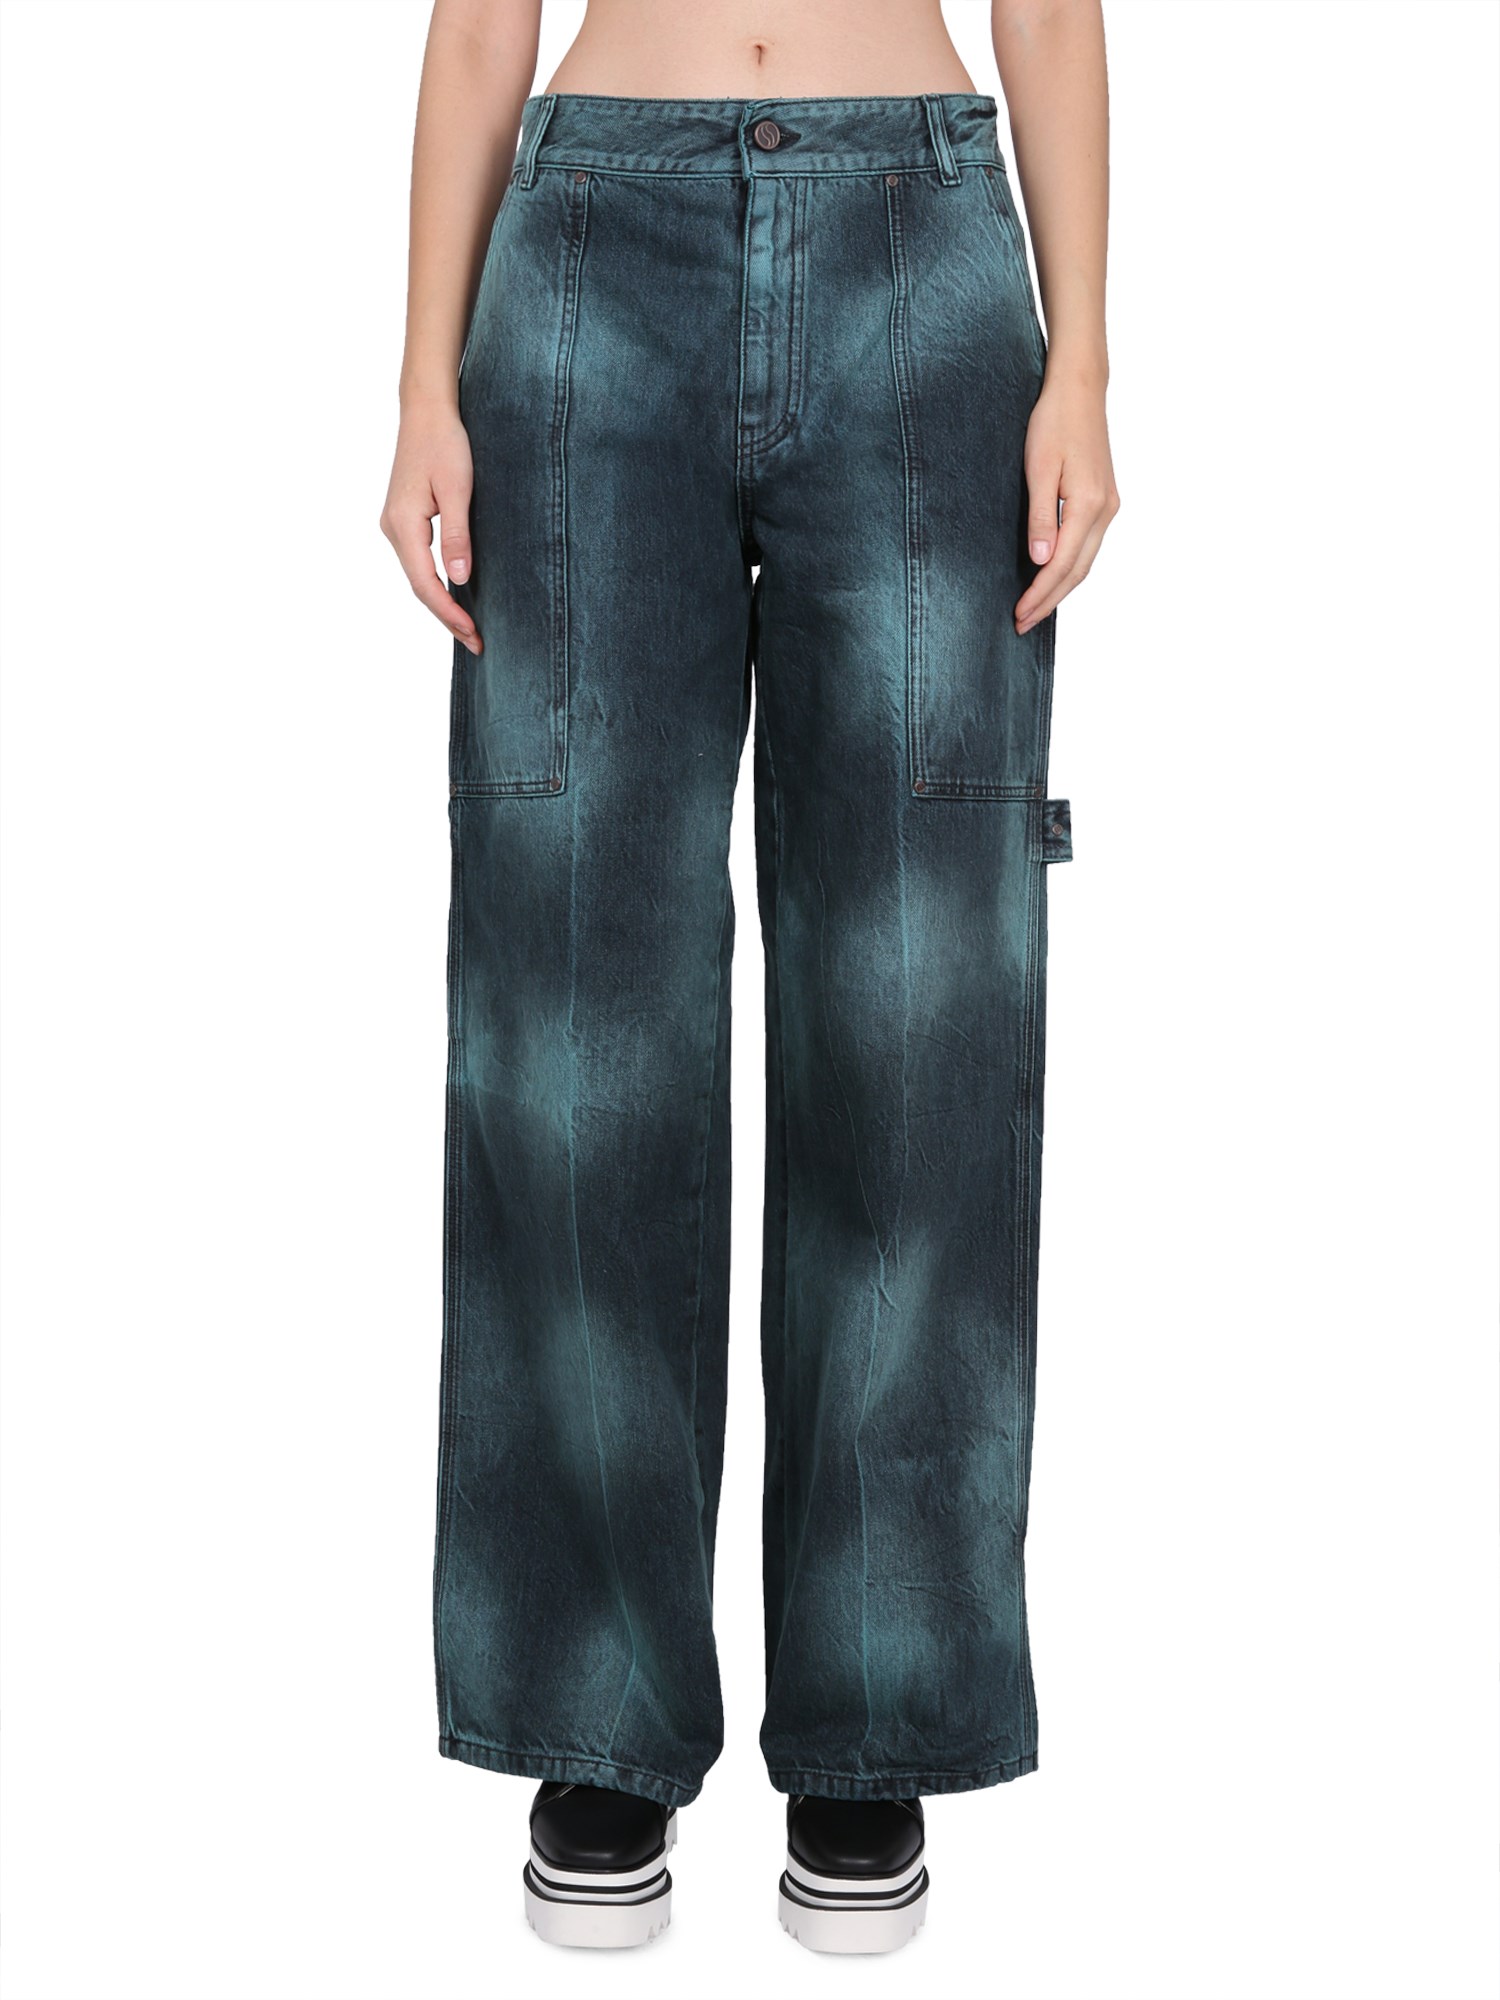 stella mccartney jeans workwear